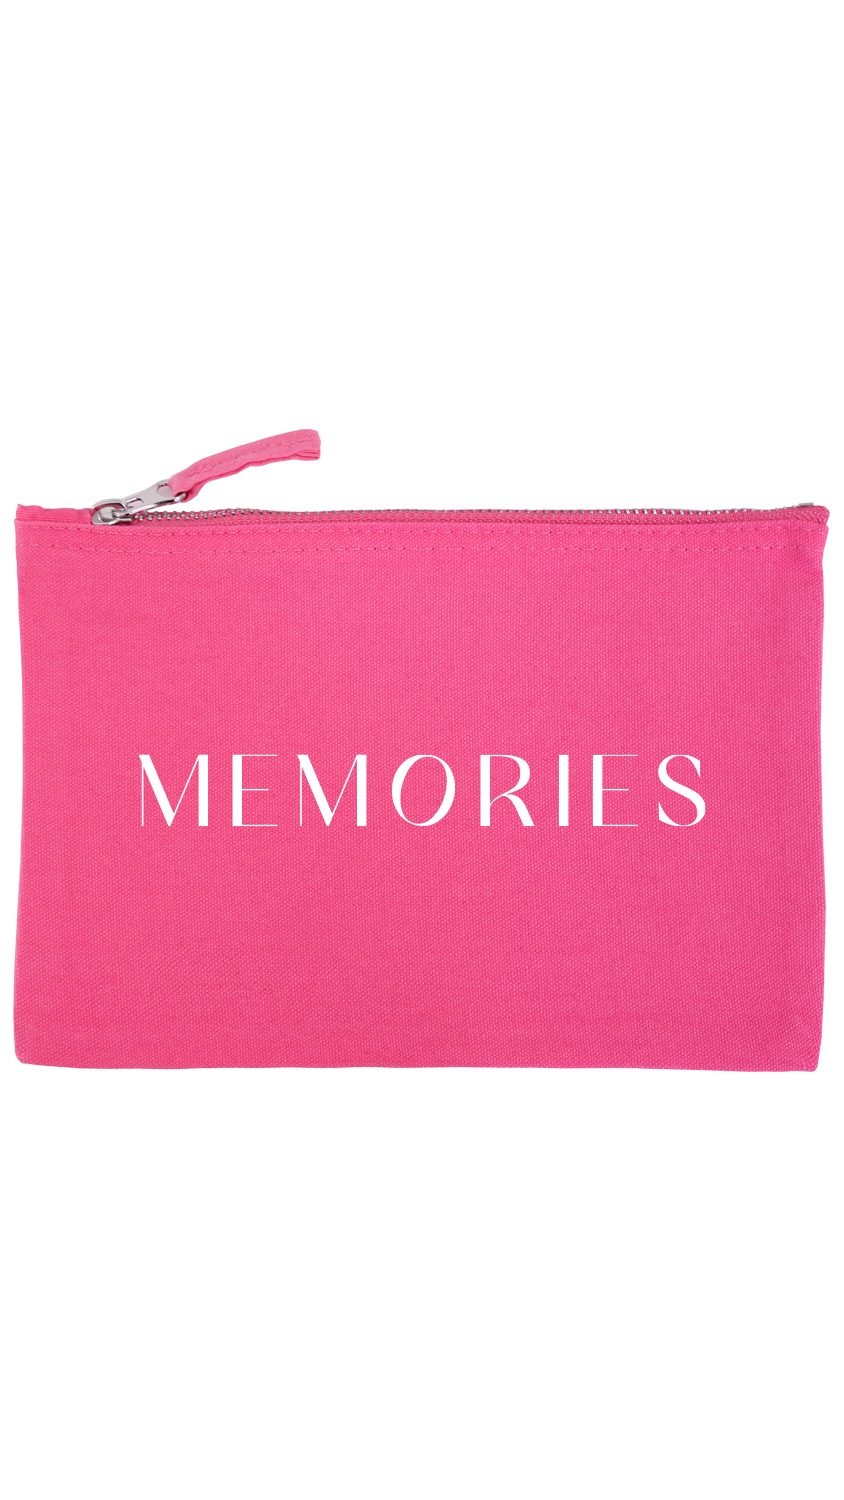 Memories Mini bag